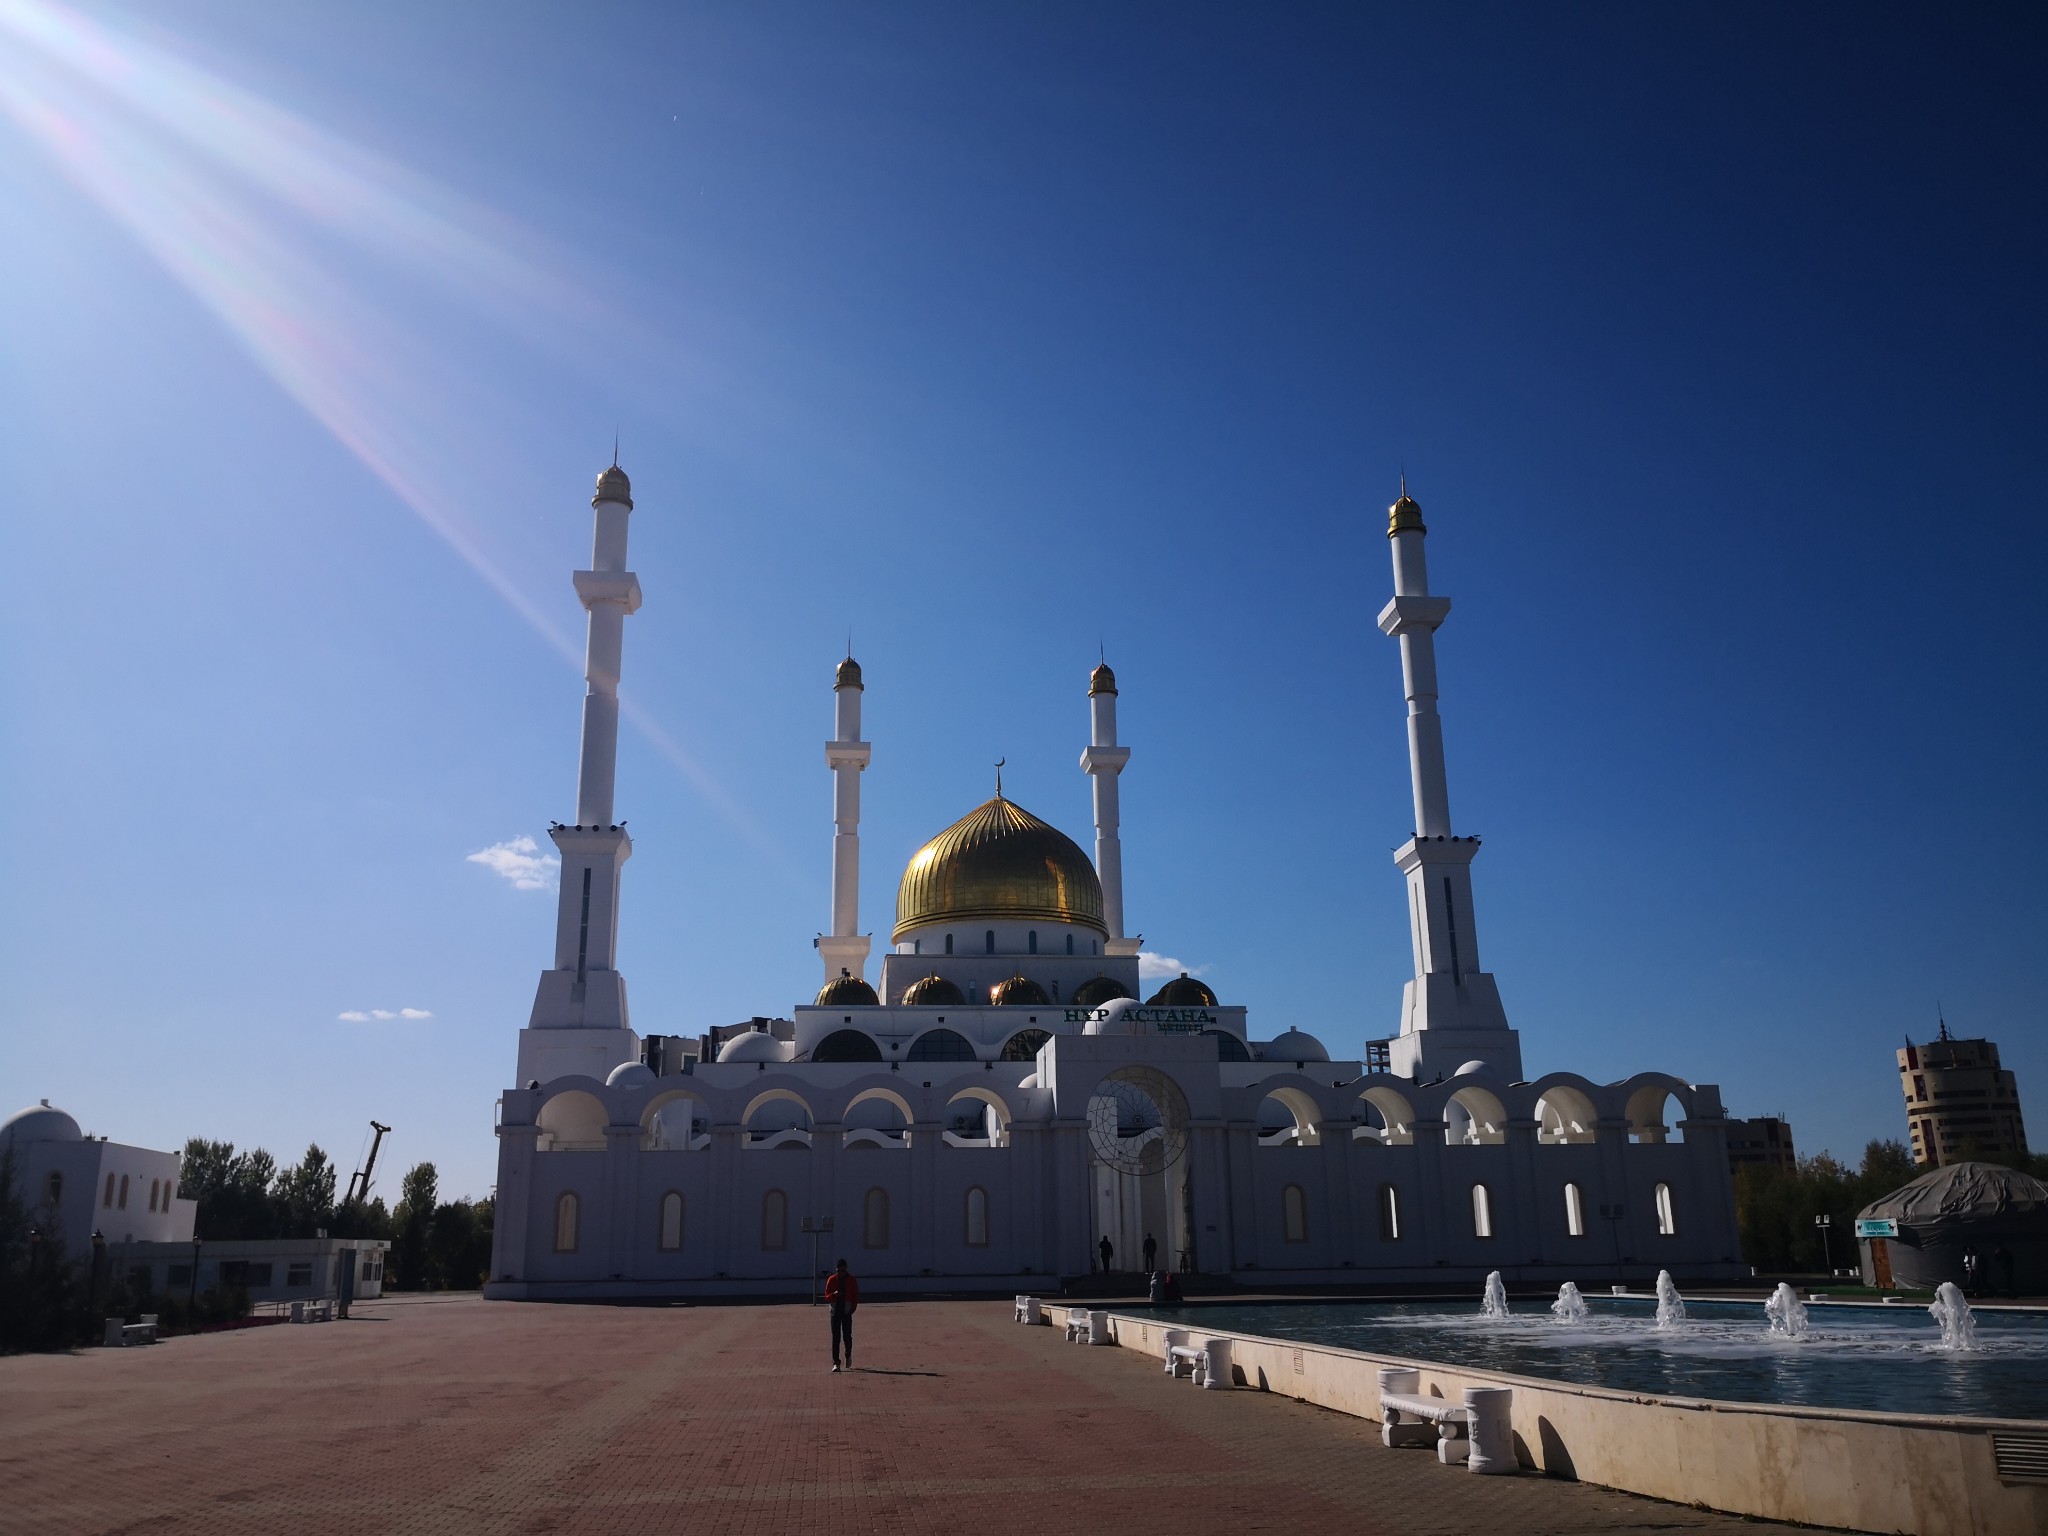 哈萨克斯坦72小时过境免签政策畅游世界上最冷的首都努尔苏丹阿斯塔纳